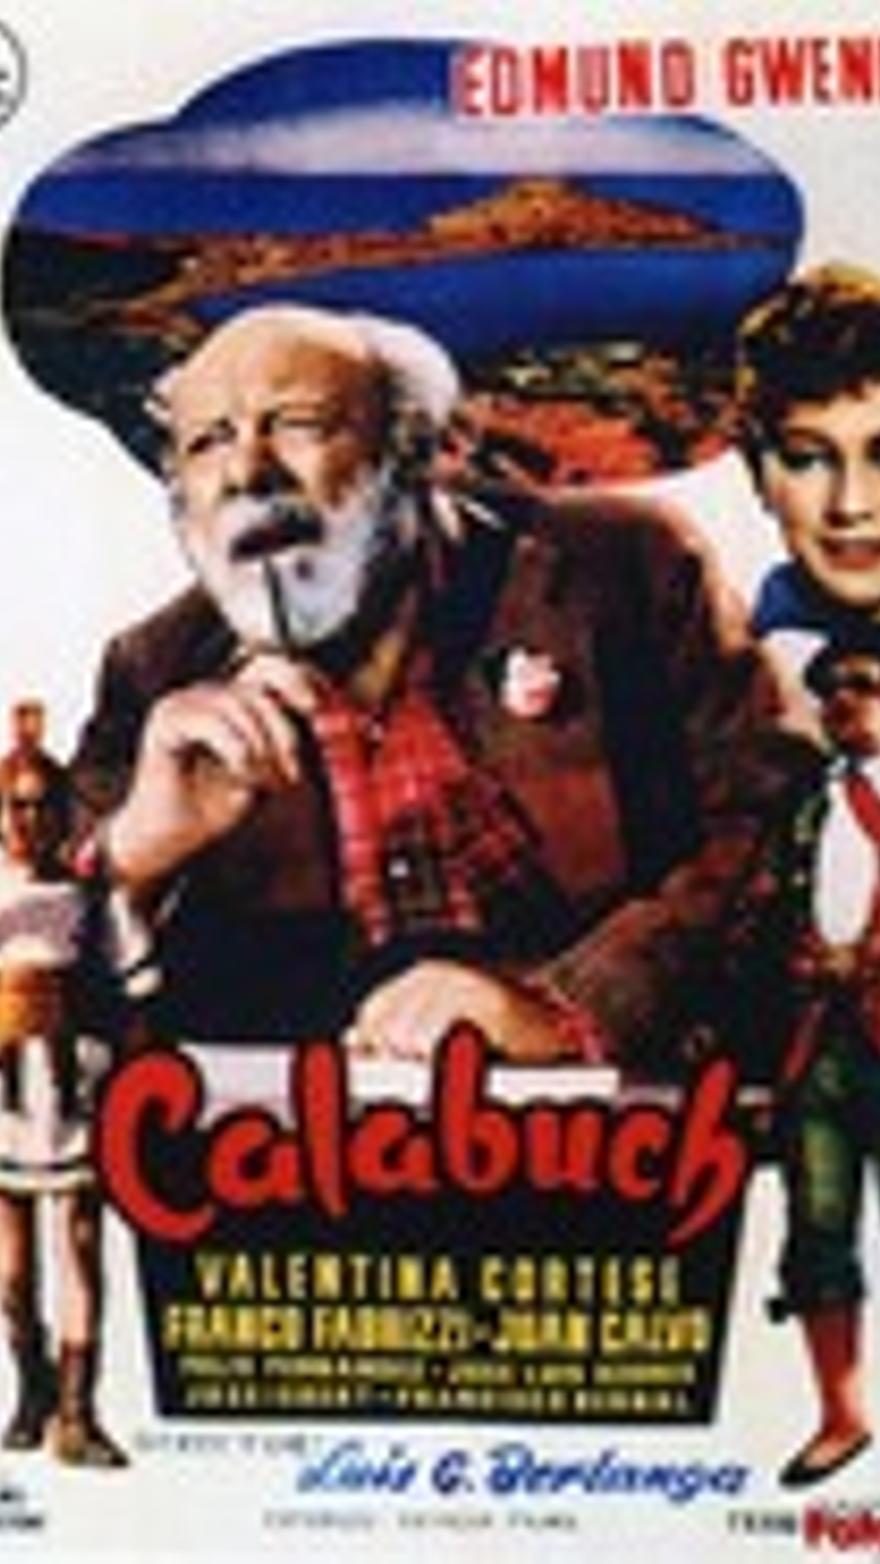 Calabuch